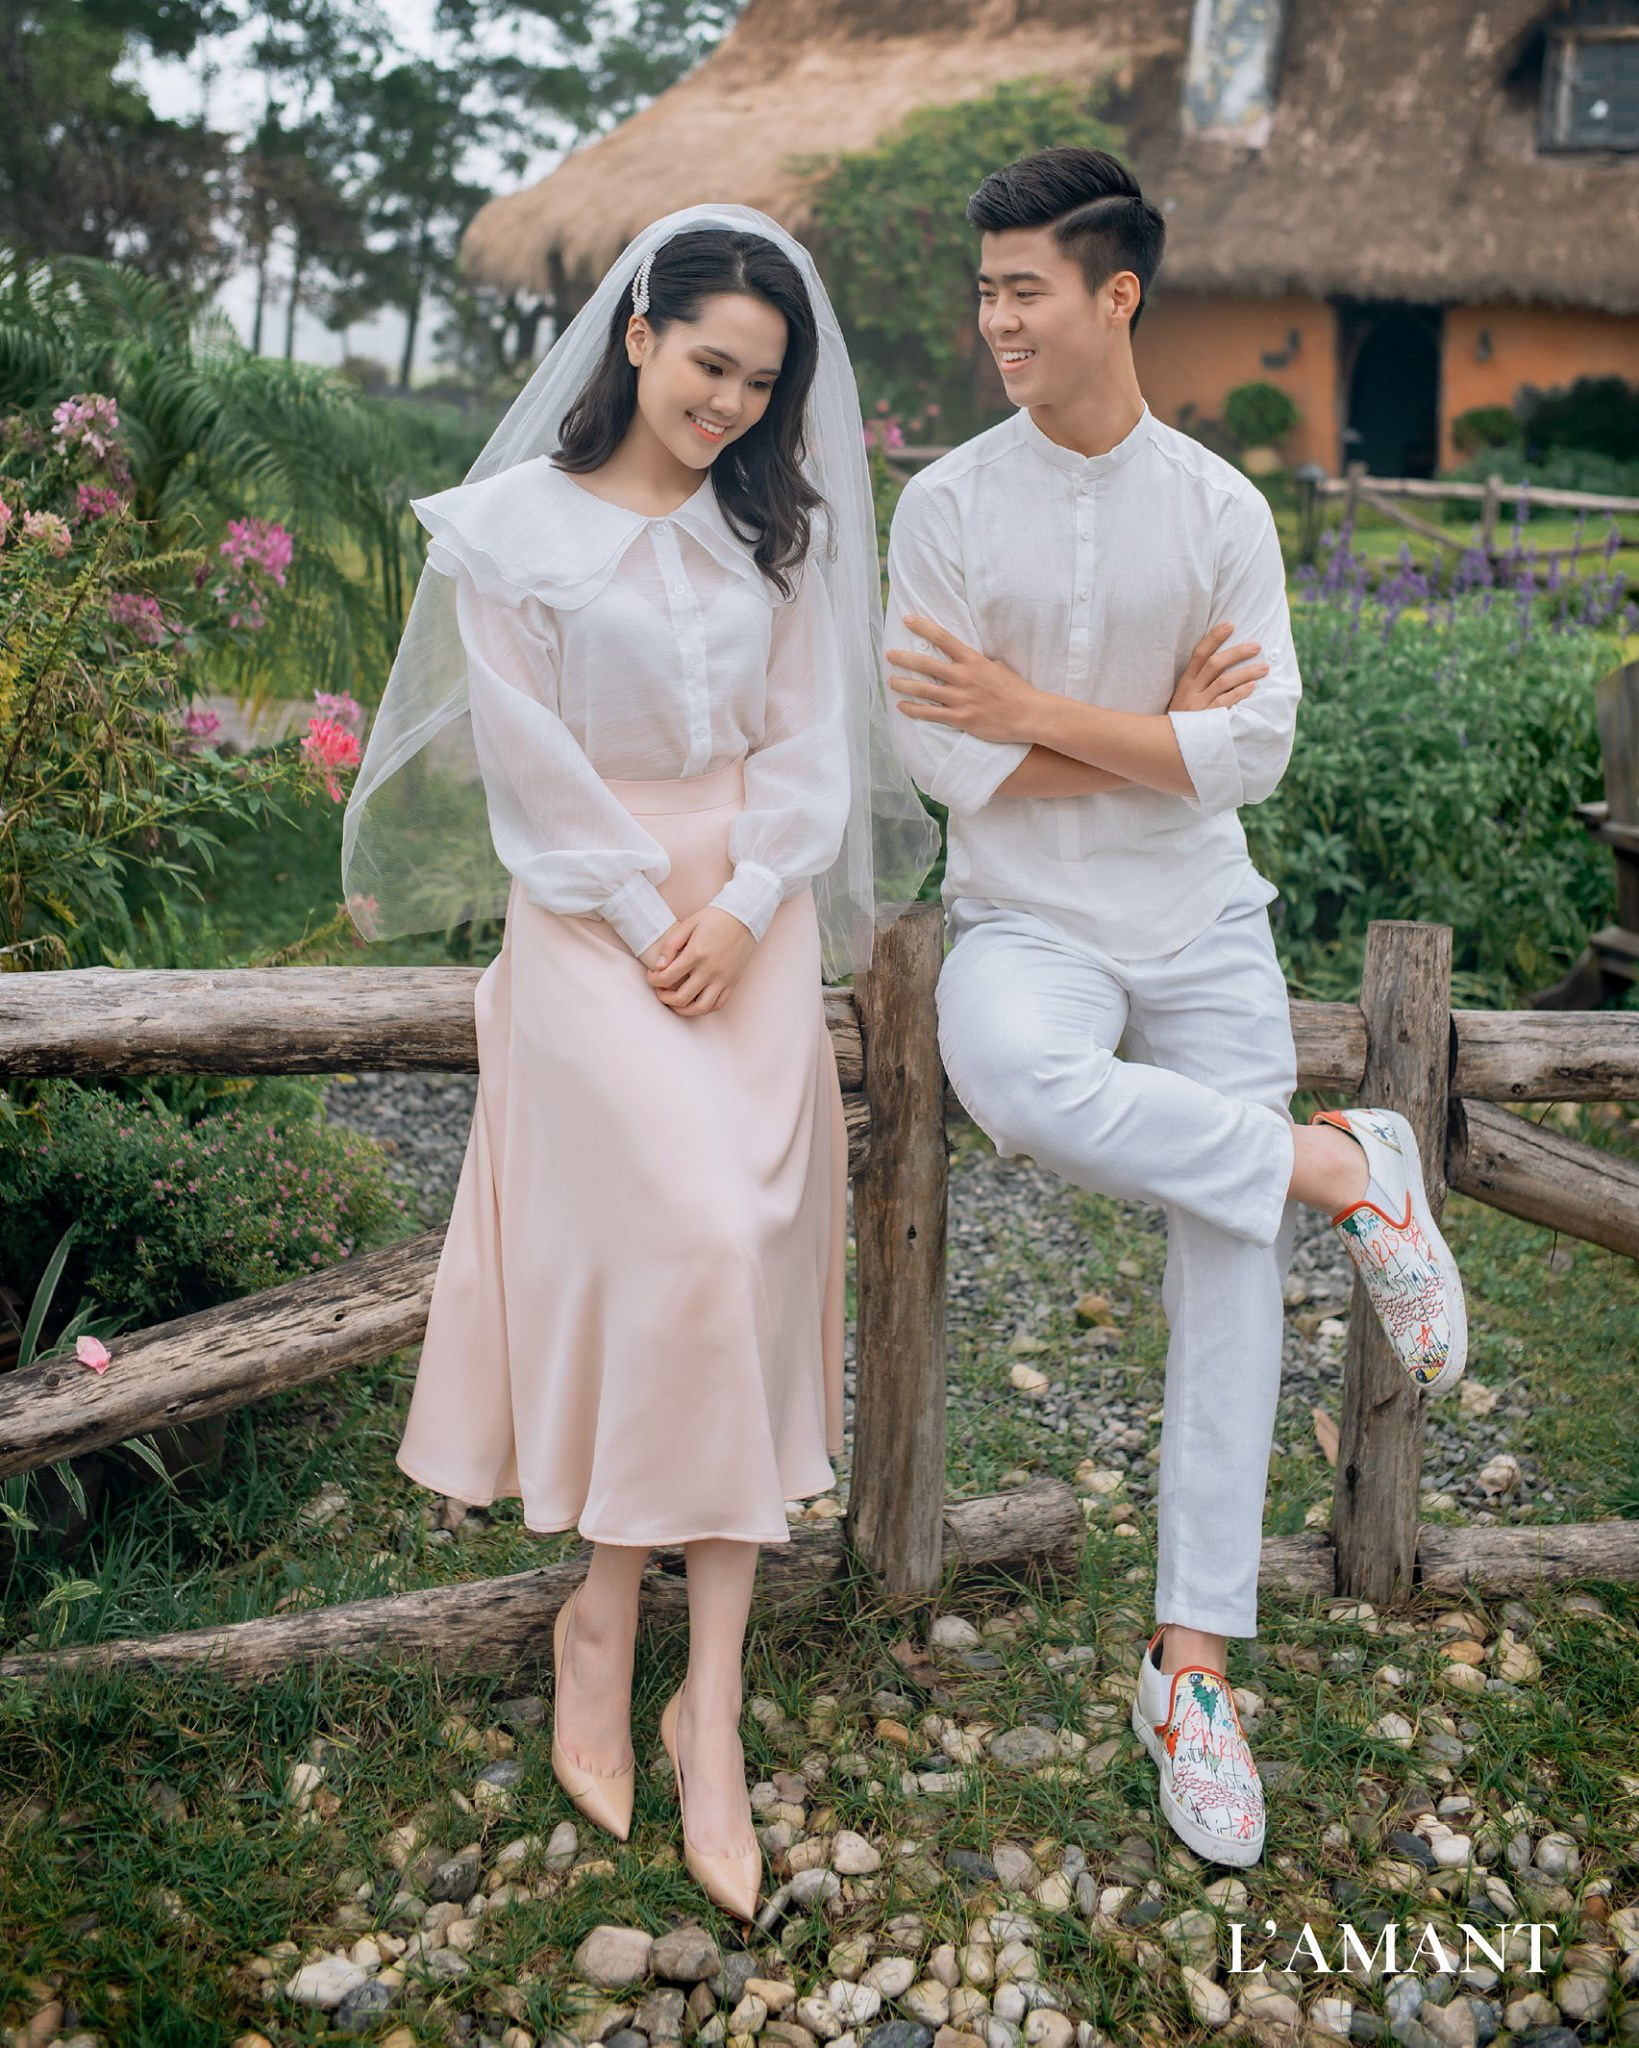 Đám cưới Duy Mạnh - Quỳnh Anh được trang hoàng bởi 500.000 viên pha lê, ảnh cưới theo bộ phim đình đám Hàn Quốc Hạ cánh nơi anh - Ảnh 8.